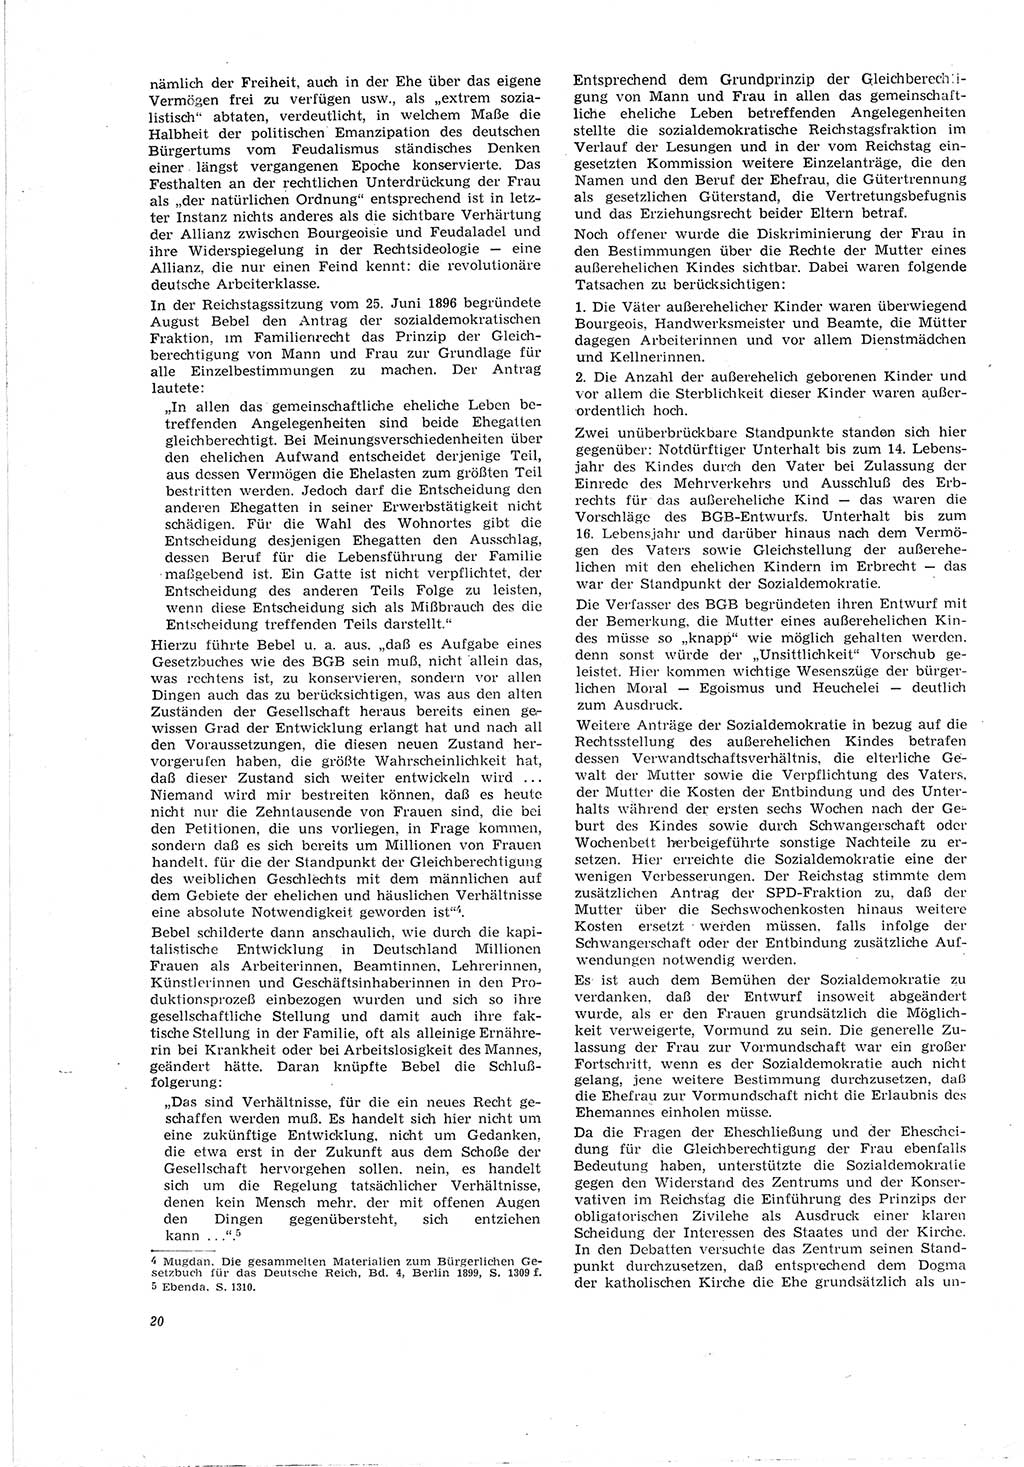 Neue Justiz (NJ), Zeitschrift für Recht und Rechtswissenschaft [Deutsche Demokratische Republik (DDR)], 20. Jahrgang 1966, Seite 20 (NJ DDR 1966, S. 20)